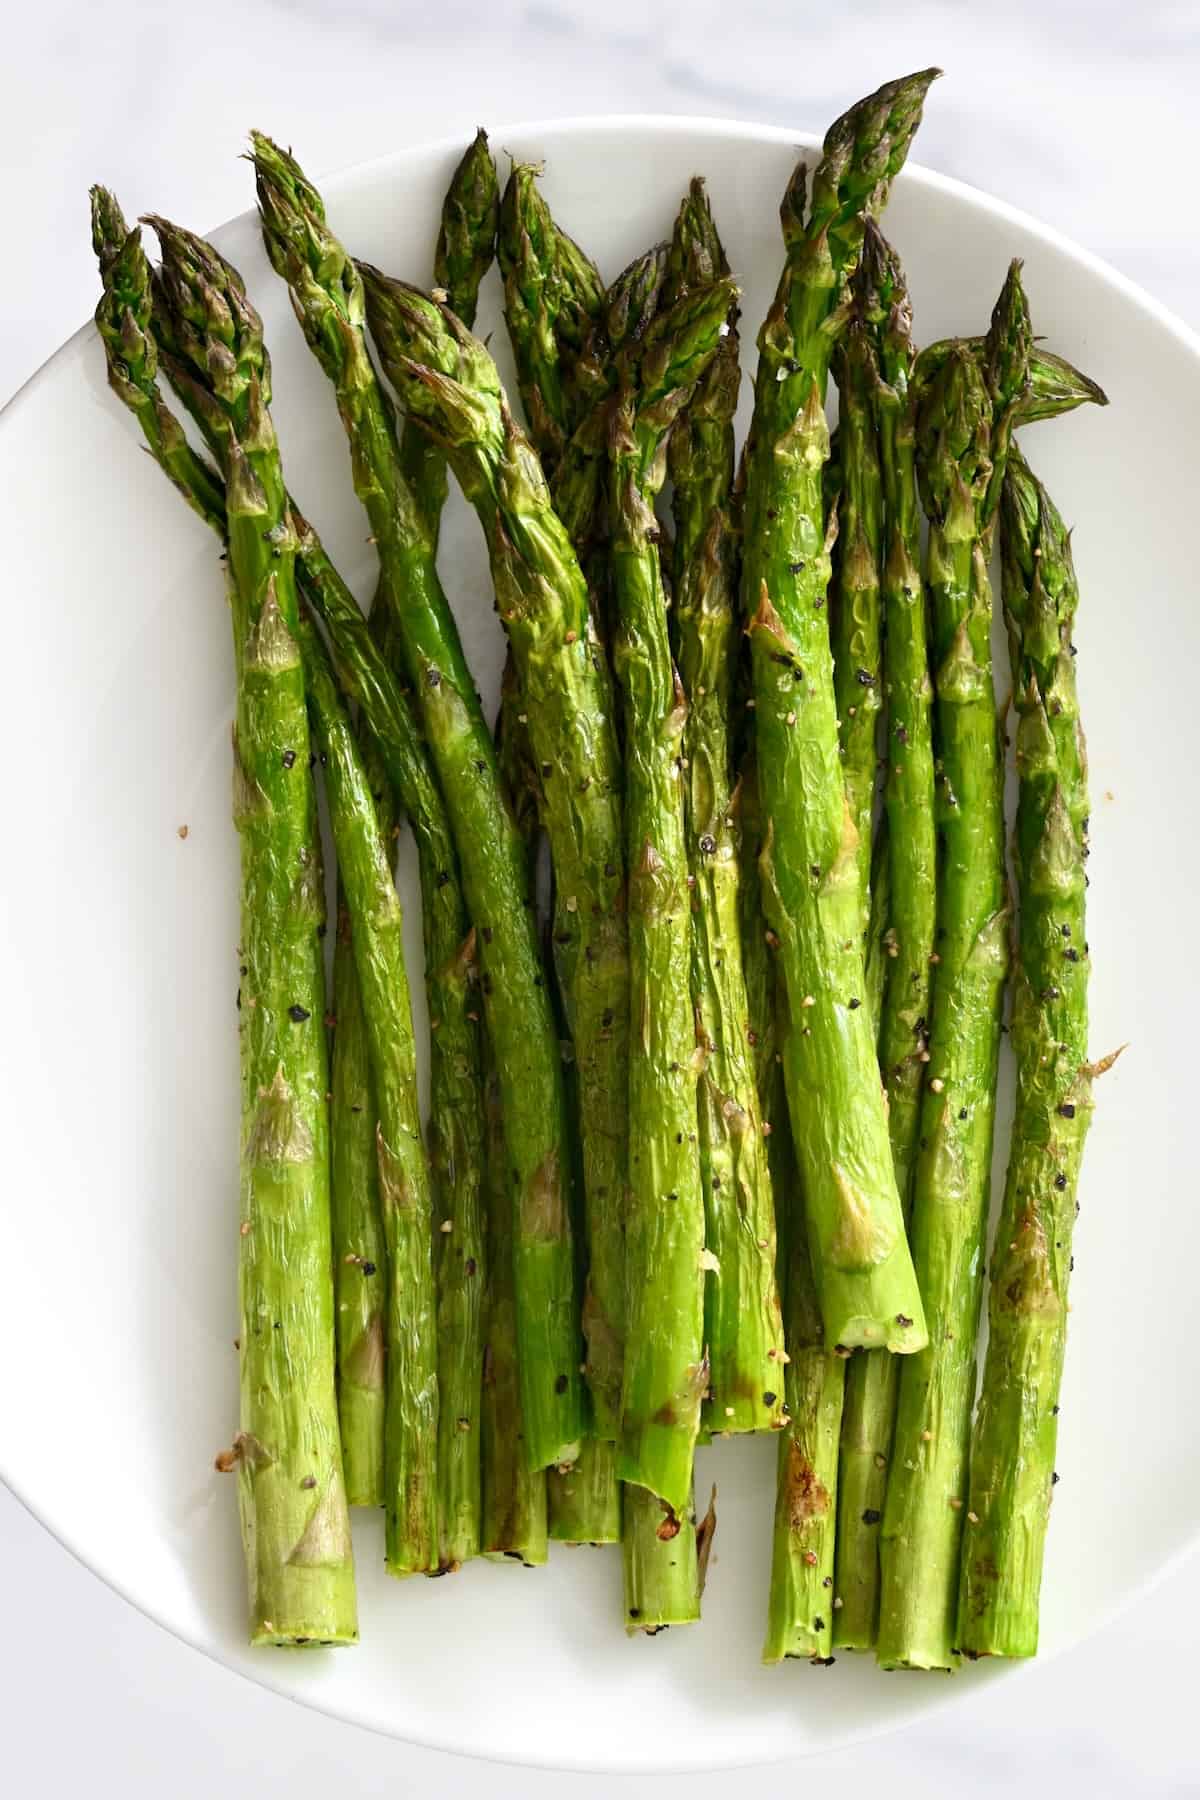 Air fried asparagus on a plate